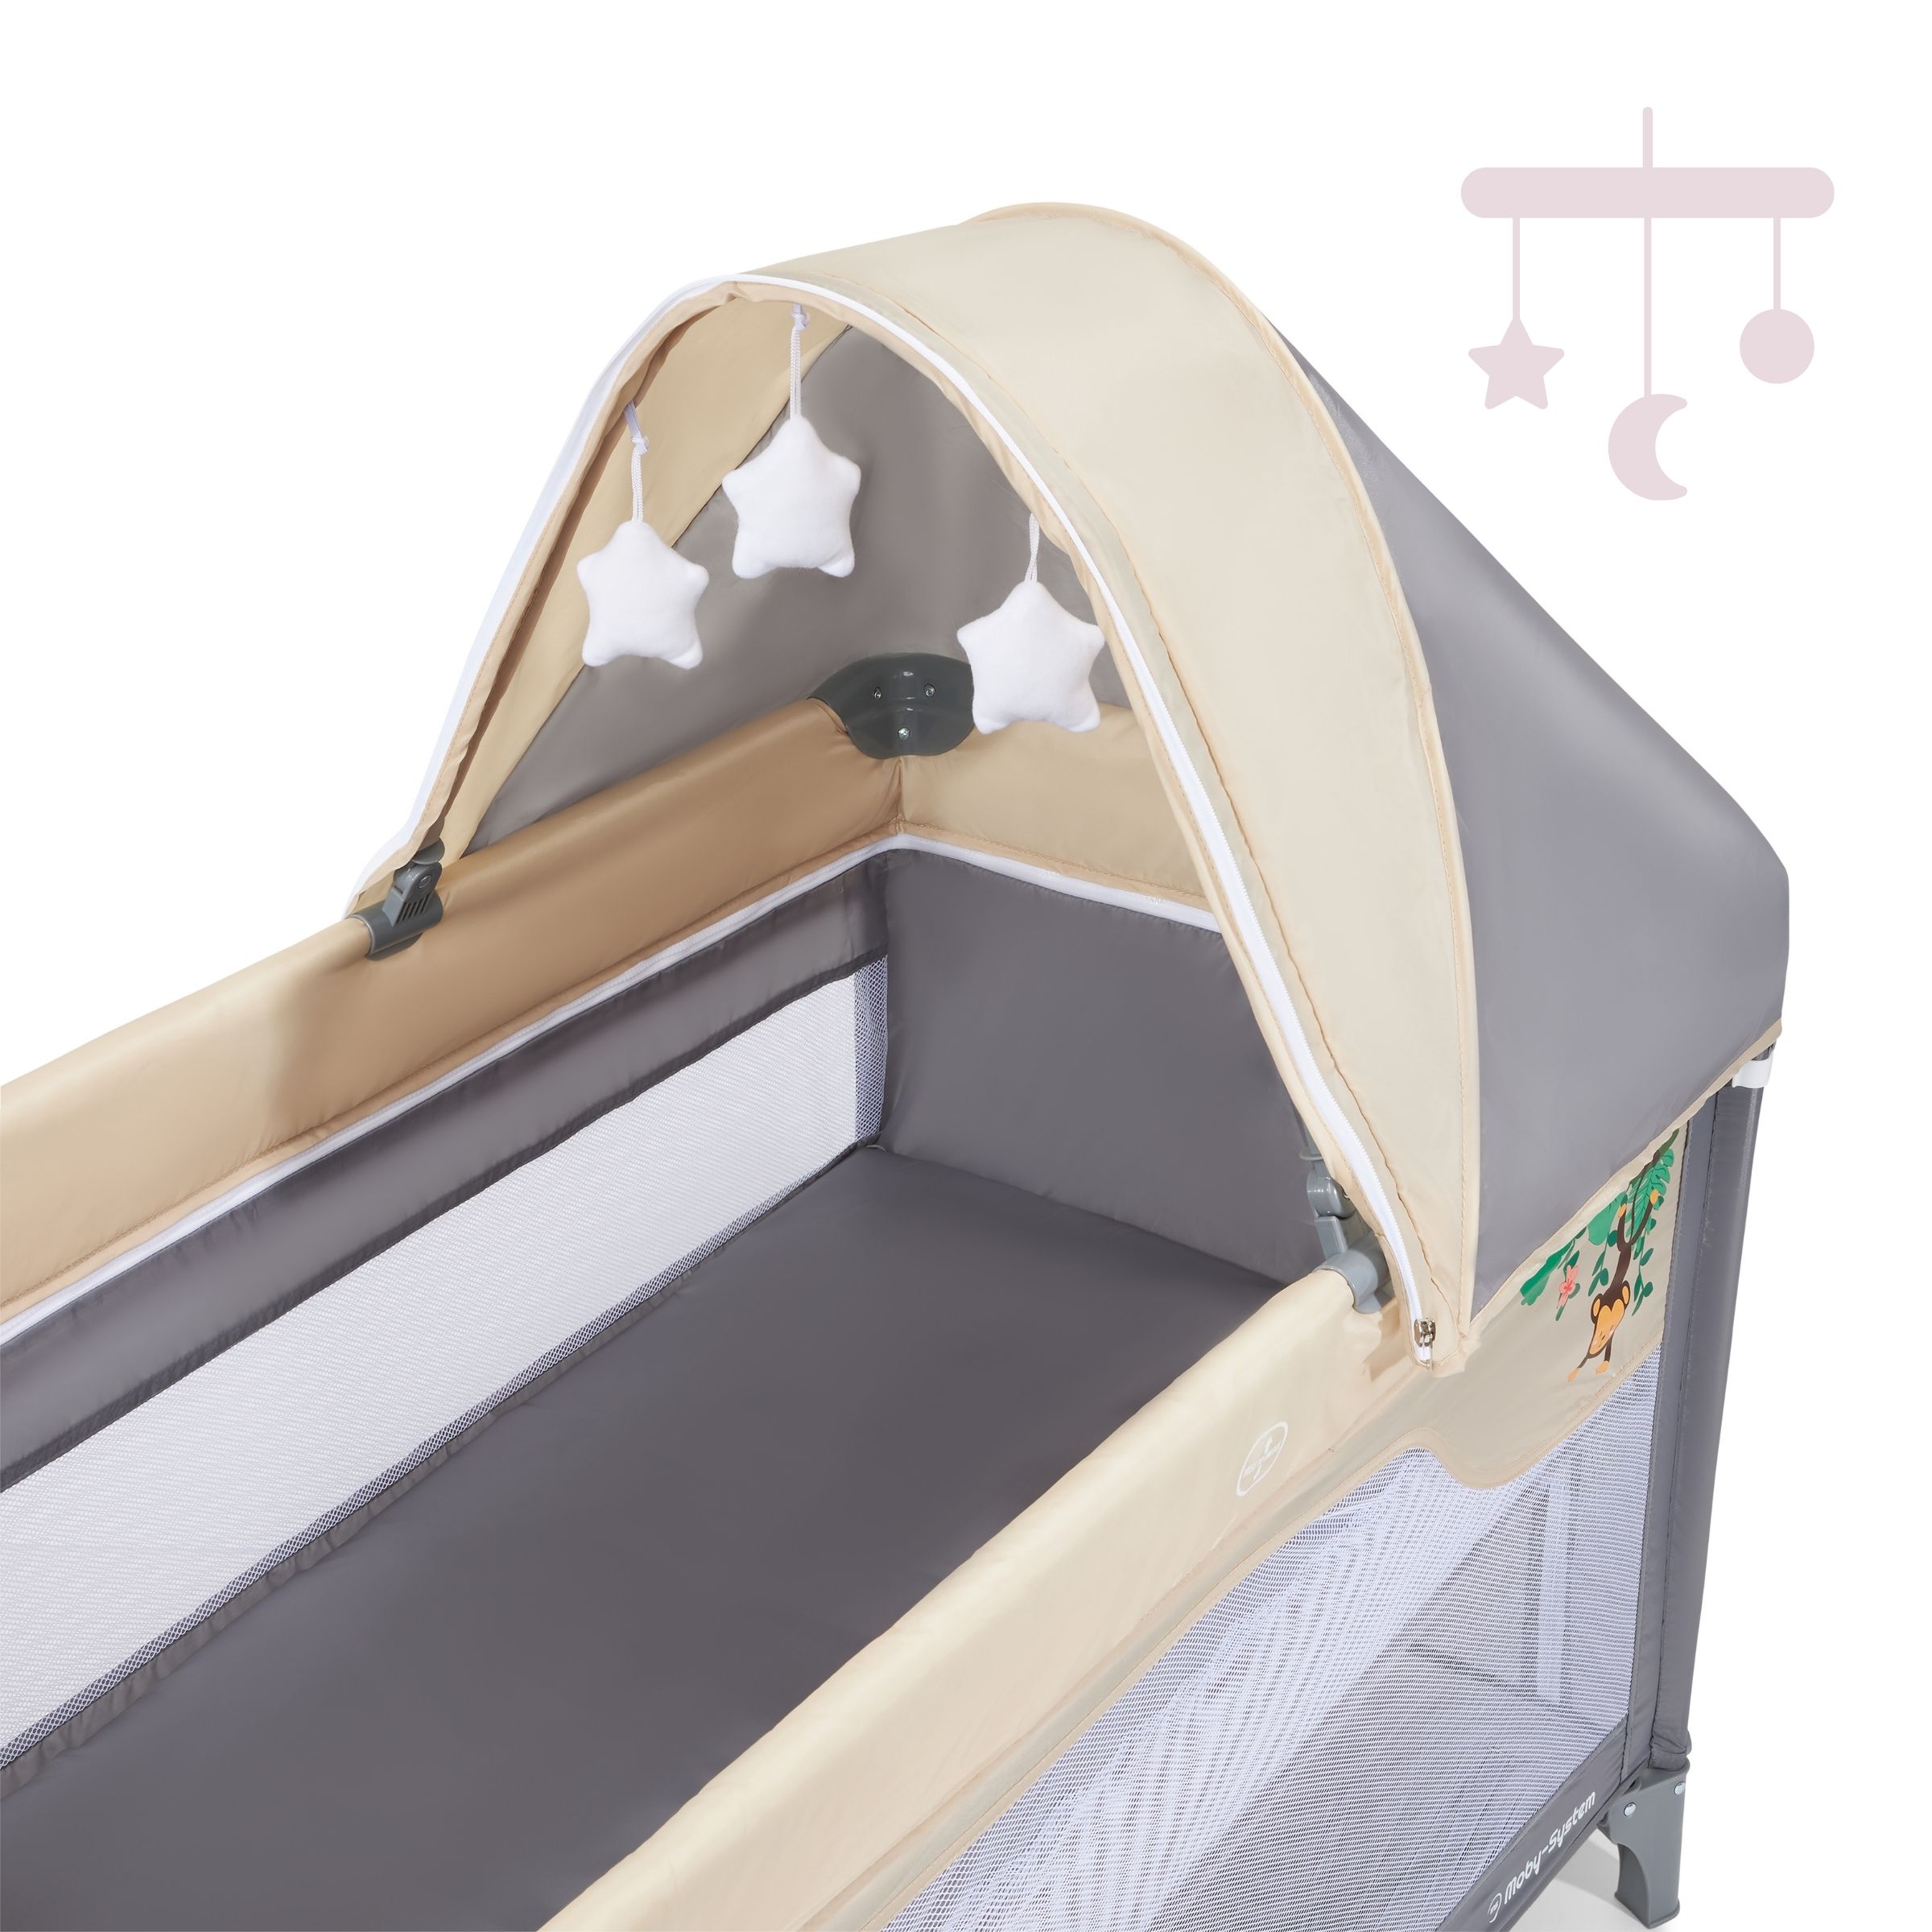 Moby system lit parapluie de voyage pour bébé 2 niveaux de matelas (haut  0-6 mois, bas 6-36 mois 25 kg), pliable, sac de transport, gris - Conforama